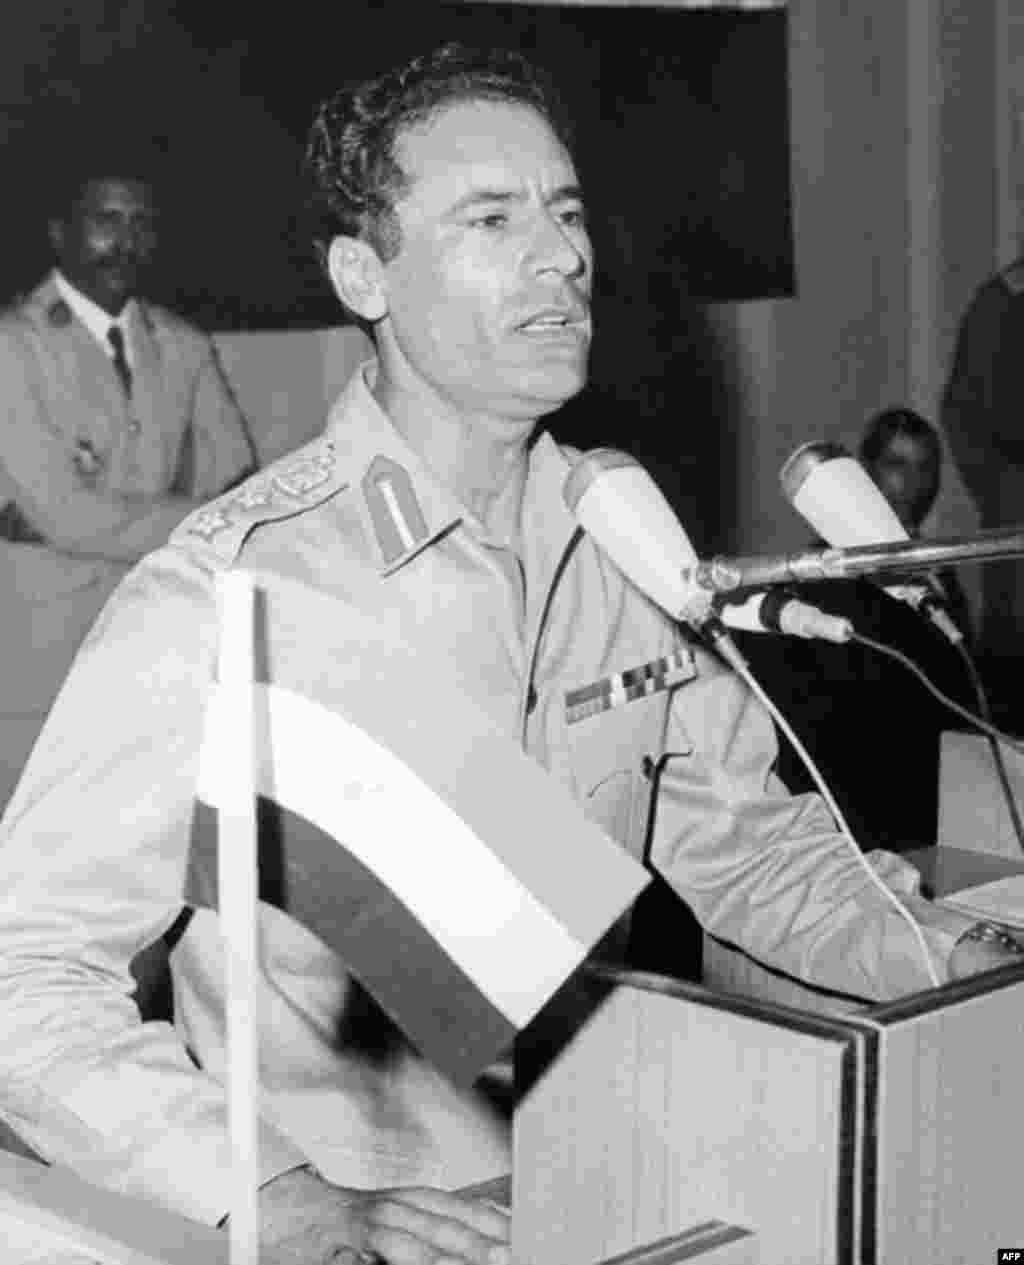 В 1969 года полковник Каддафи сверг короля Идриса и провозгласил Ливию «во имя свободы, социализма и единства» Народной Социалистической Джамахирией